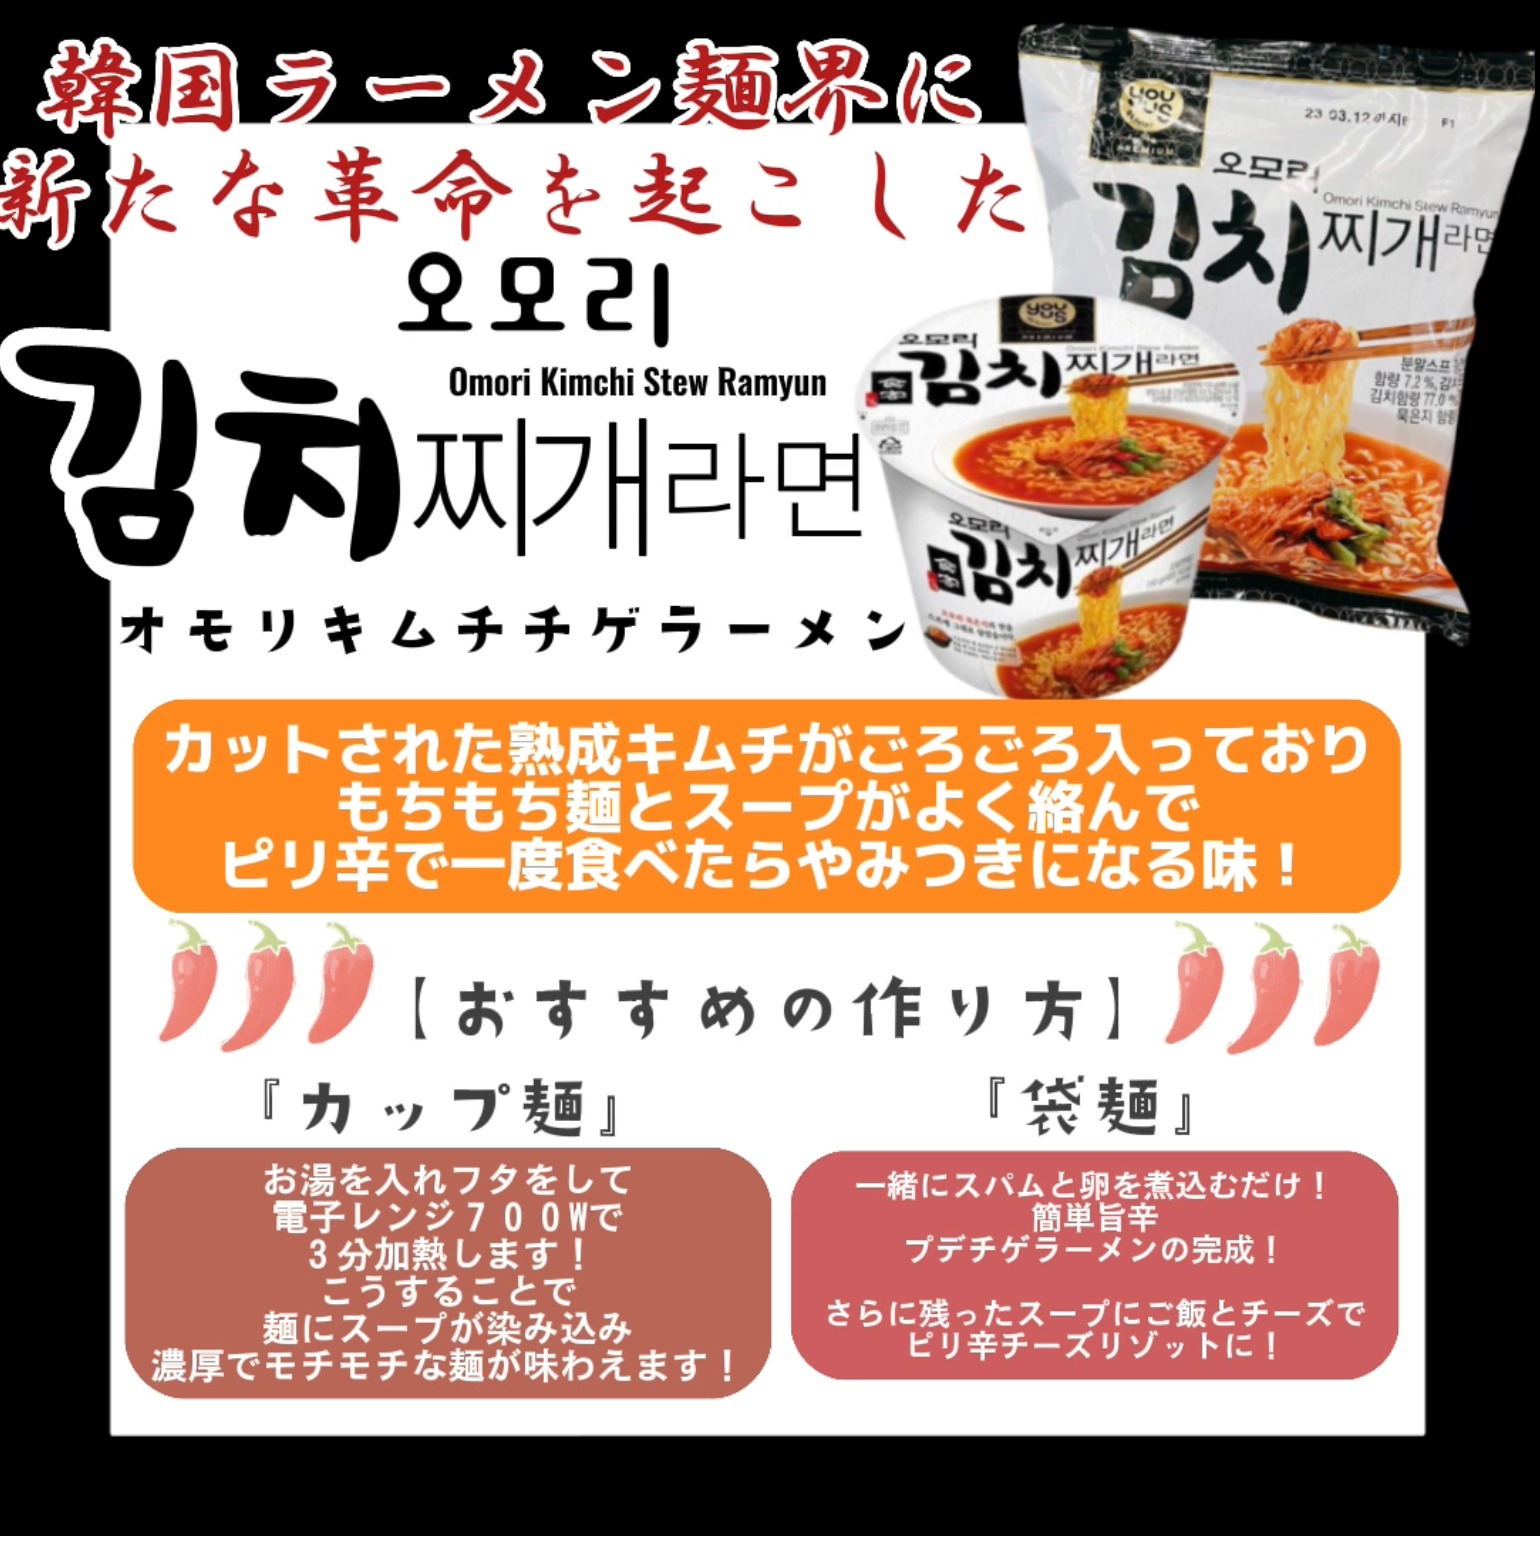 【新商品】韓国ラーメン界に新たな革命を起こした『オモリキムチチゲラーメン』がついにイルソイルソに登場！